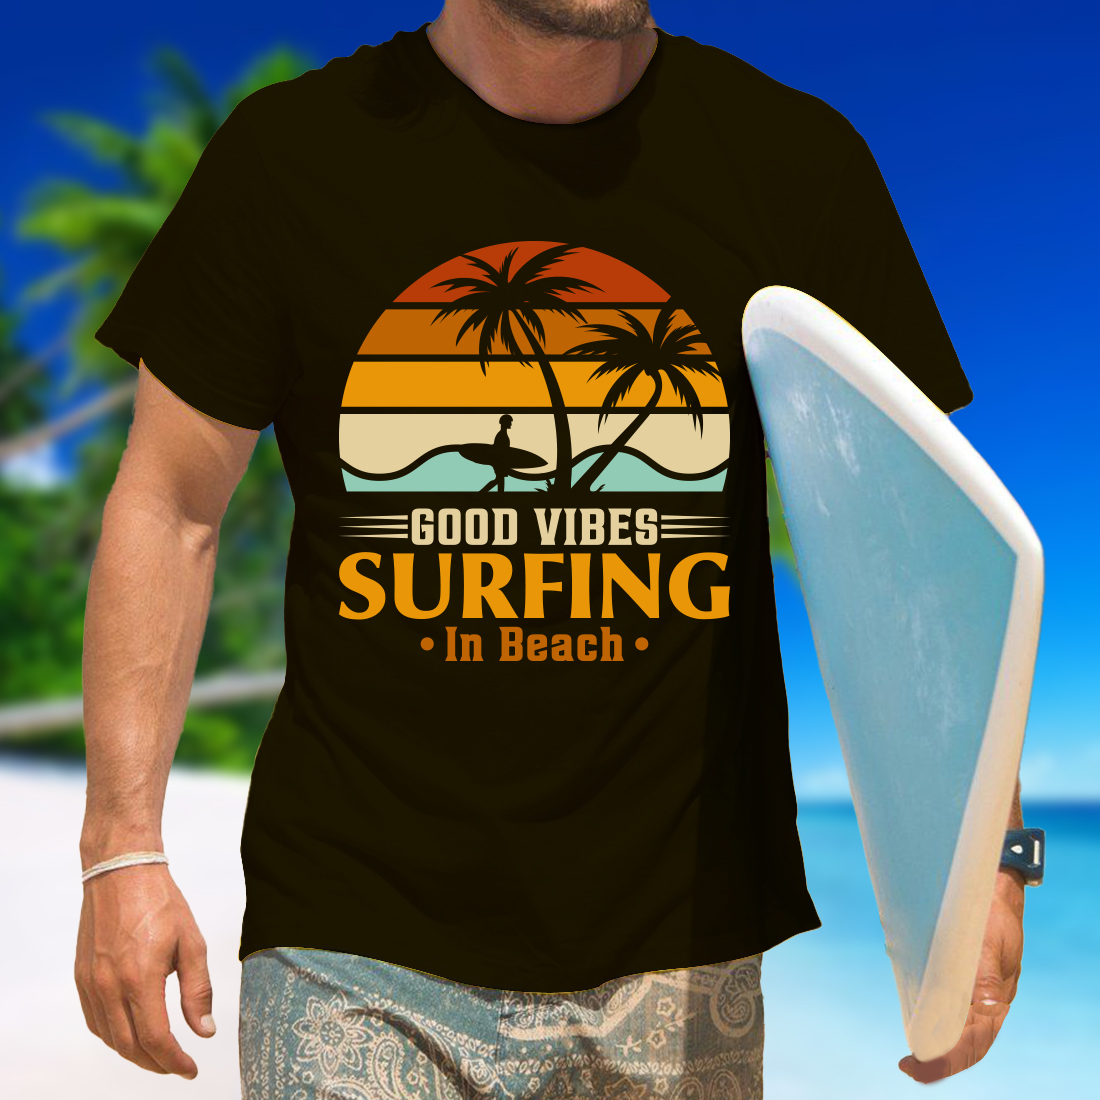 sunset t shirt design 2 963